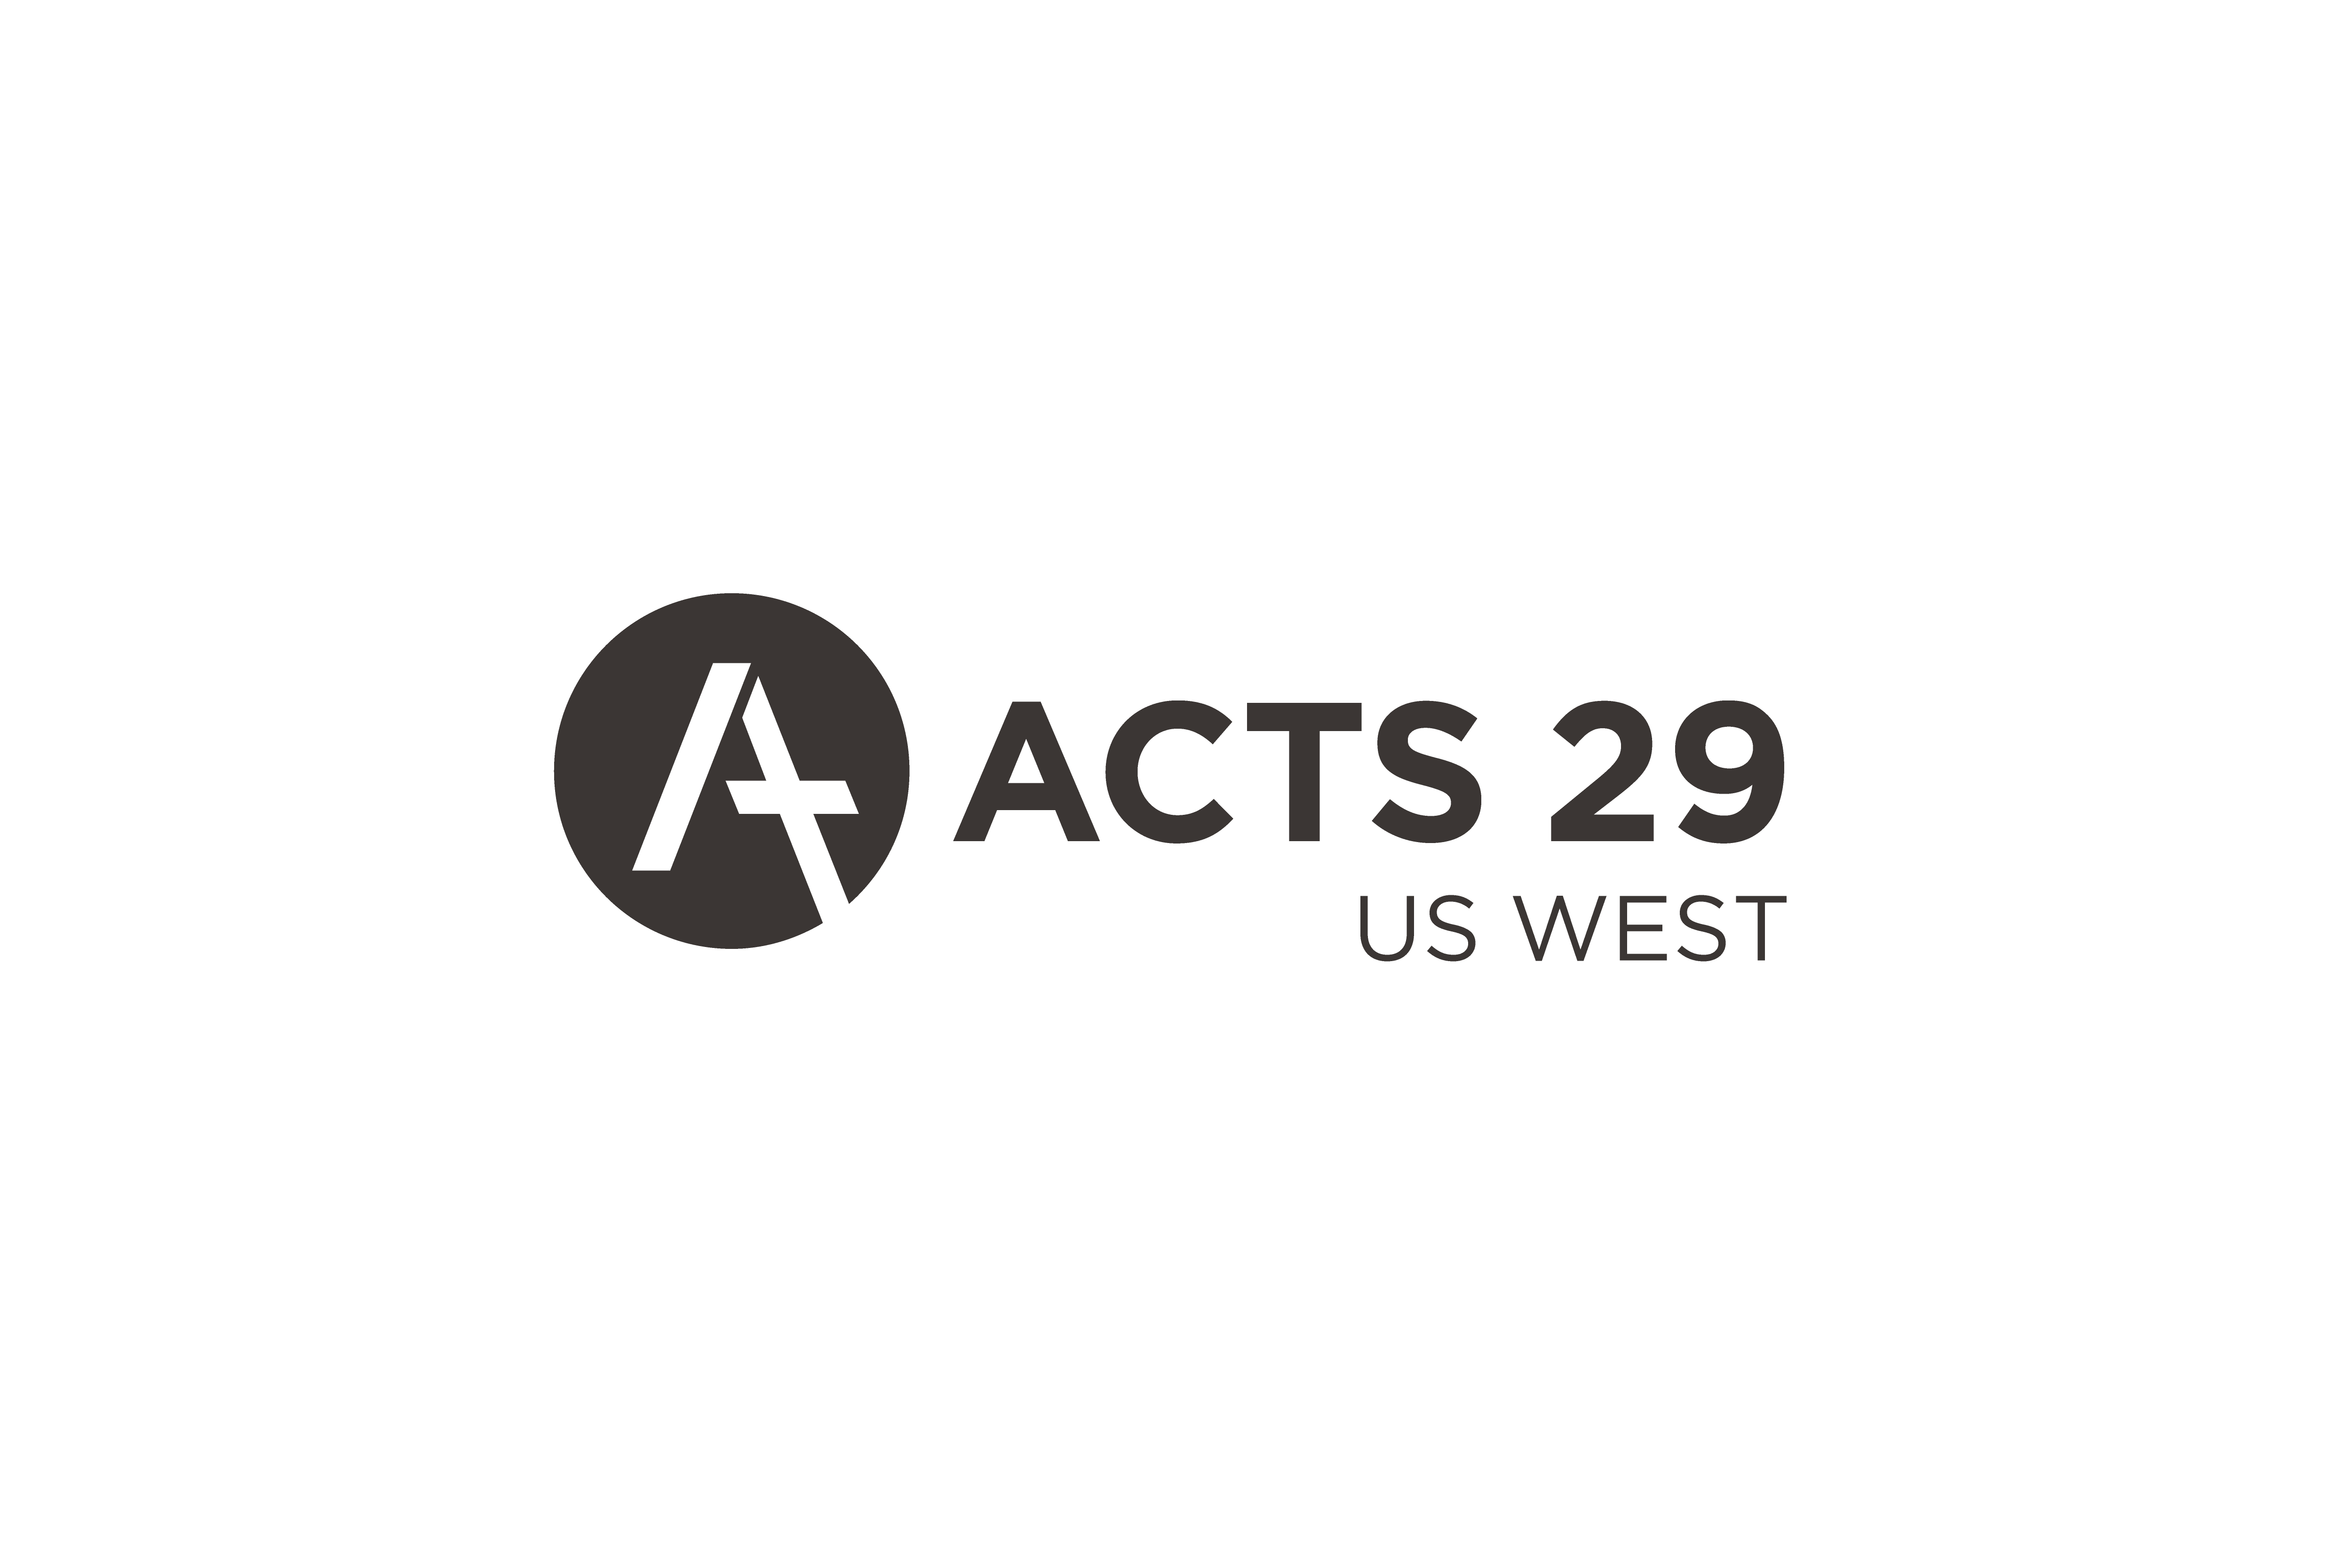 Acts 29 area event with Jeff Vanderstelt